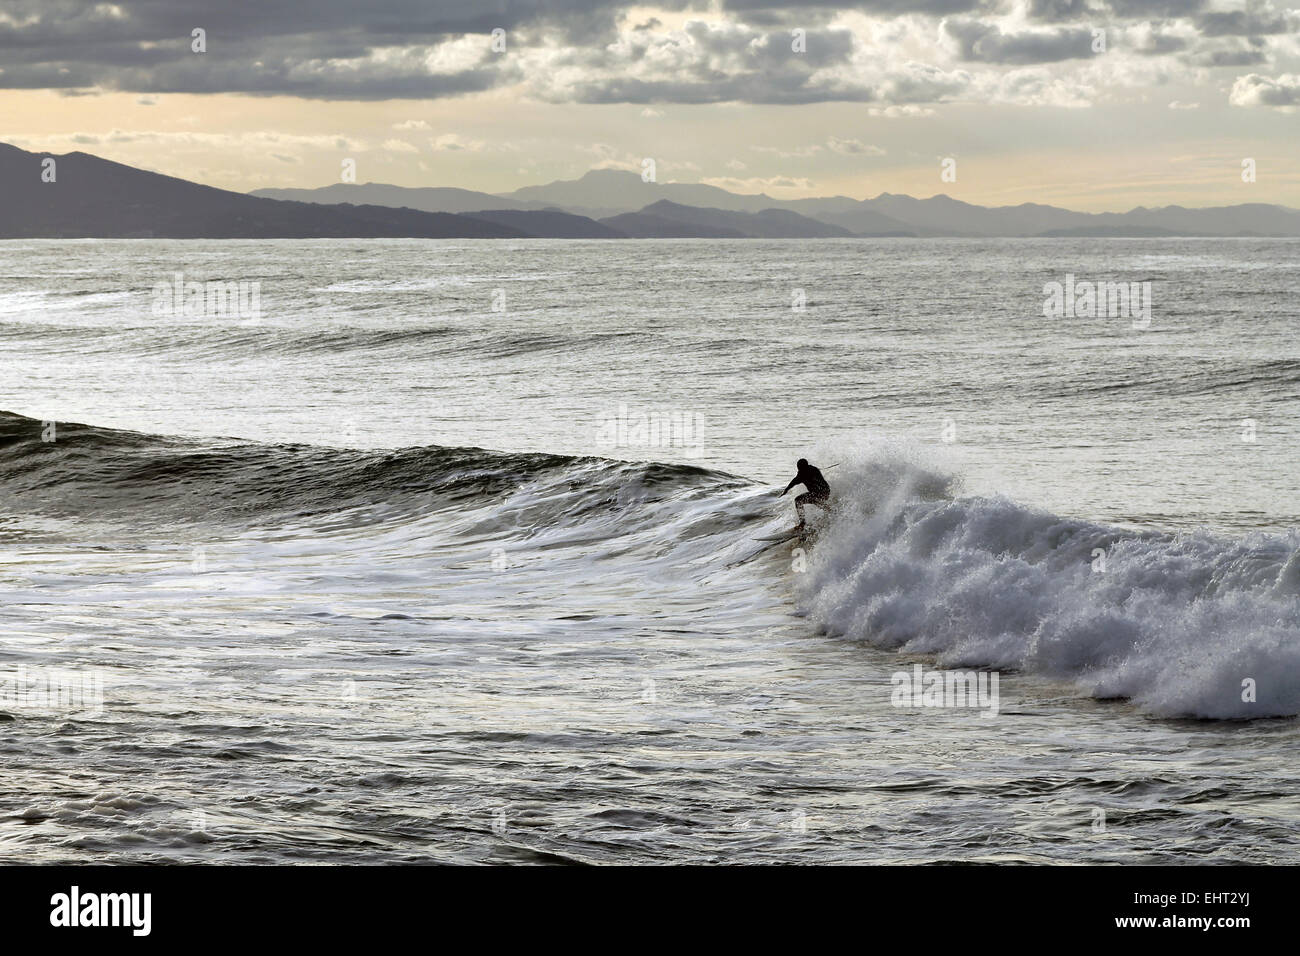 Le surf à Anglet, Pyrenees Atlantiques, France Banque D'Images